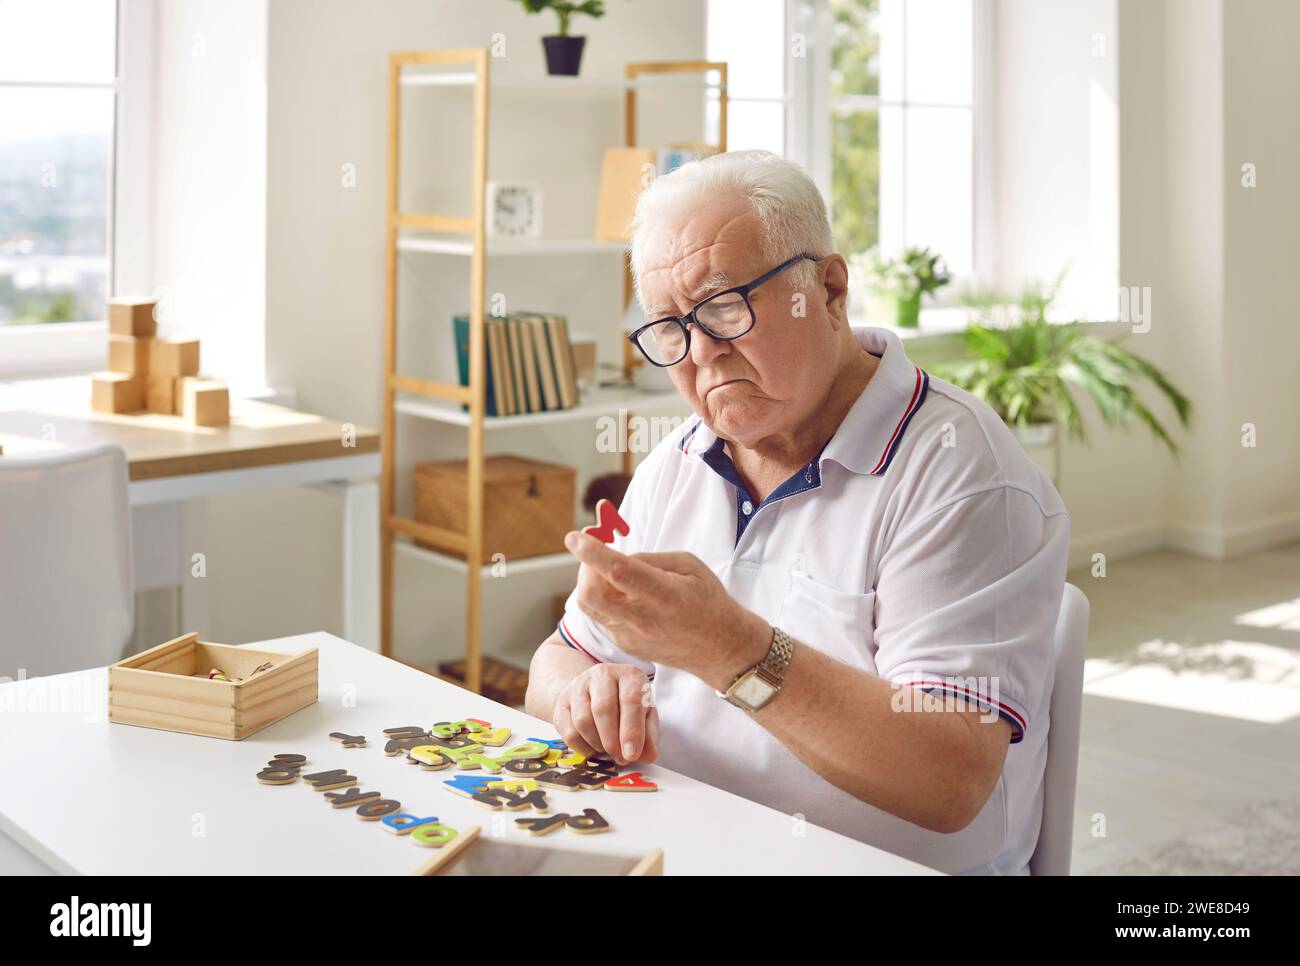 Homme âgé atteint de démence assis à table, jouant à des jeux et essayant de résoudre des énigmes Banque D'Images